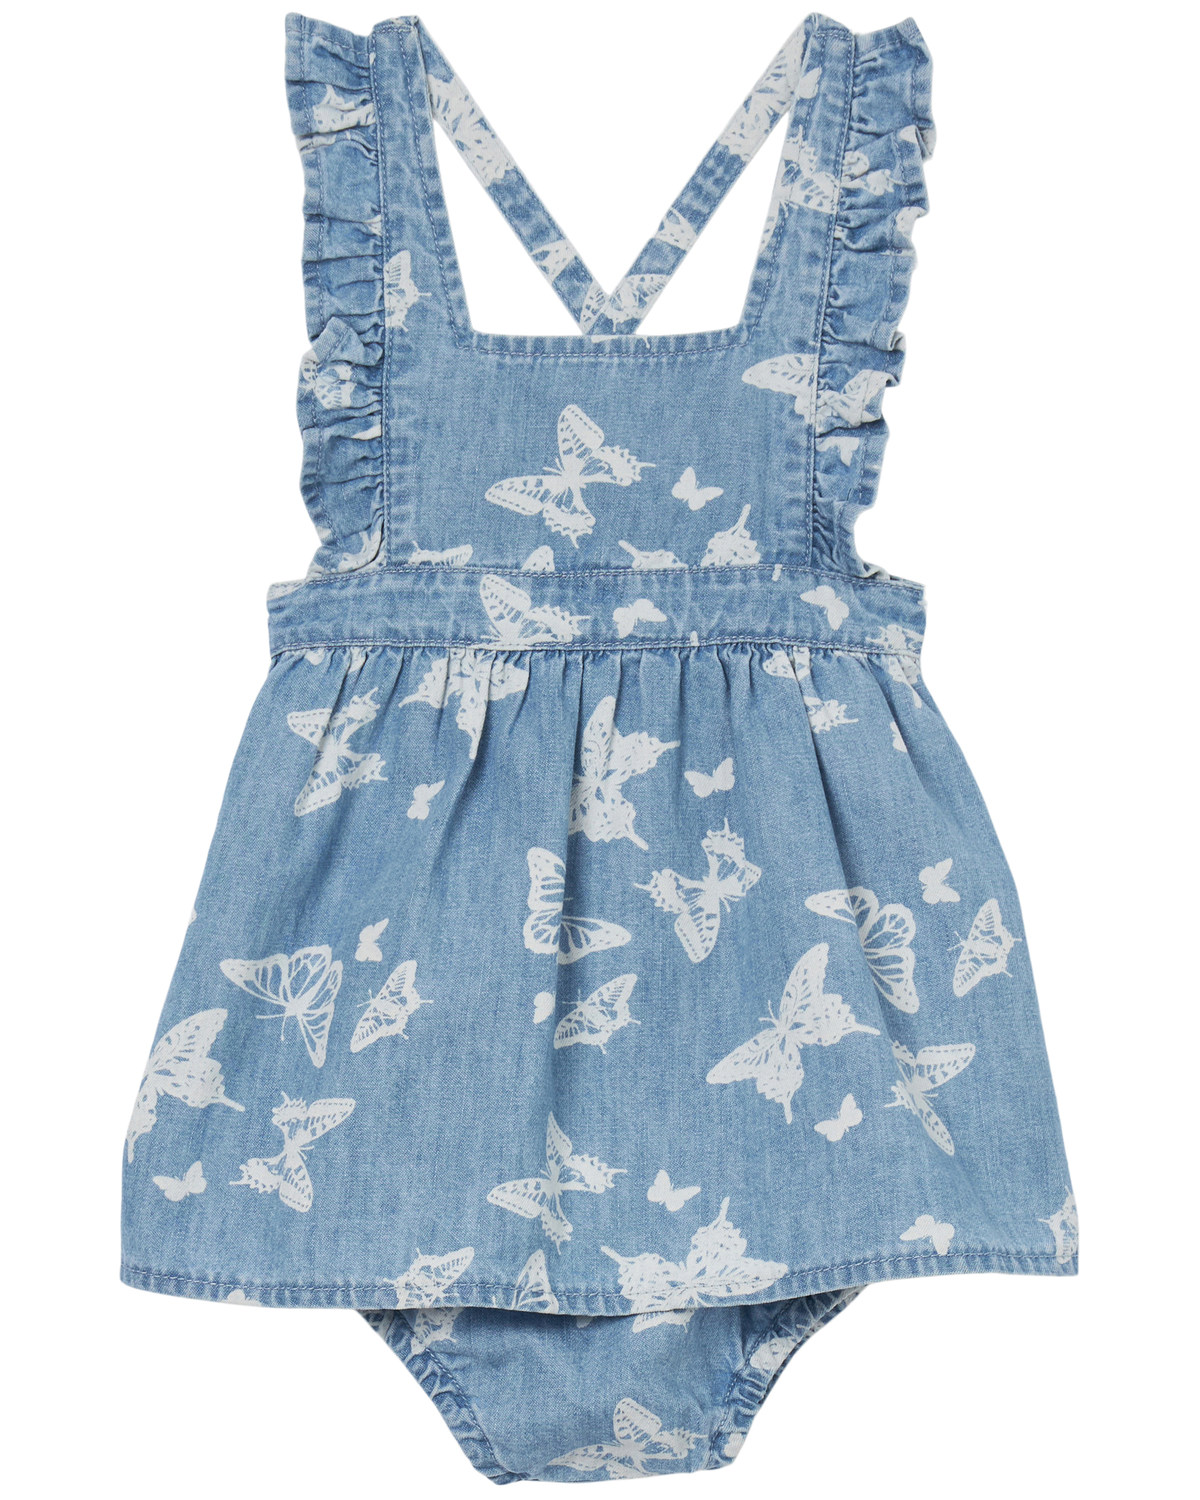 Wrangler Infant Girls' Denim Butterfly Print Dress Onesie